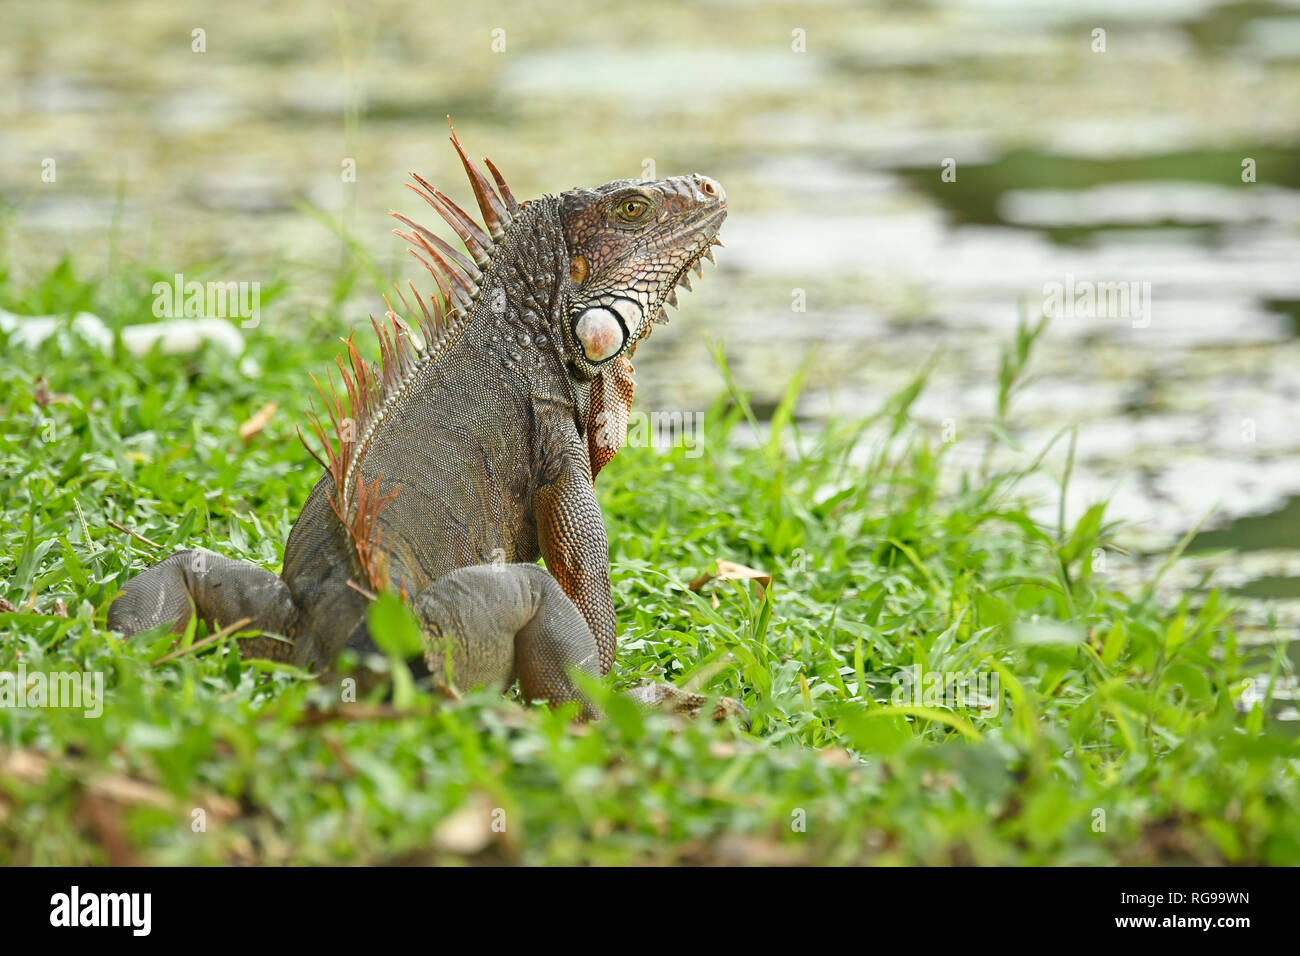 Comune o verde (Iguana Iguana iguana) adulto seduto in erba, Turrialba, Costa Rica, Ottobre Foto Stock